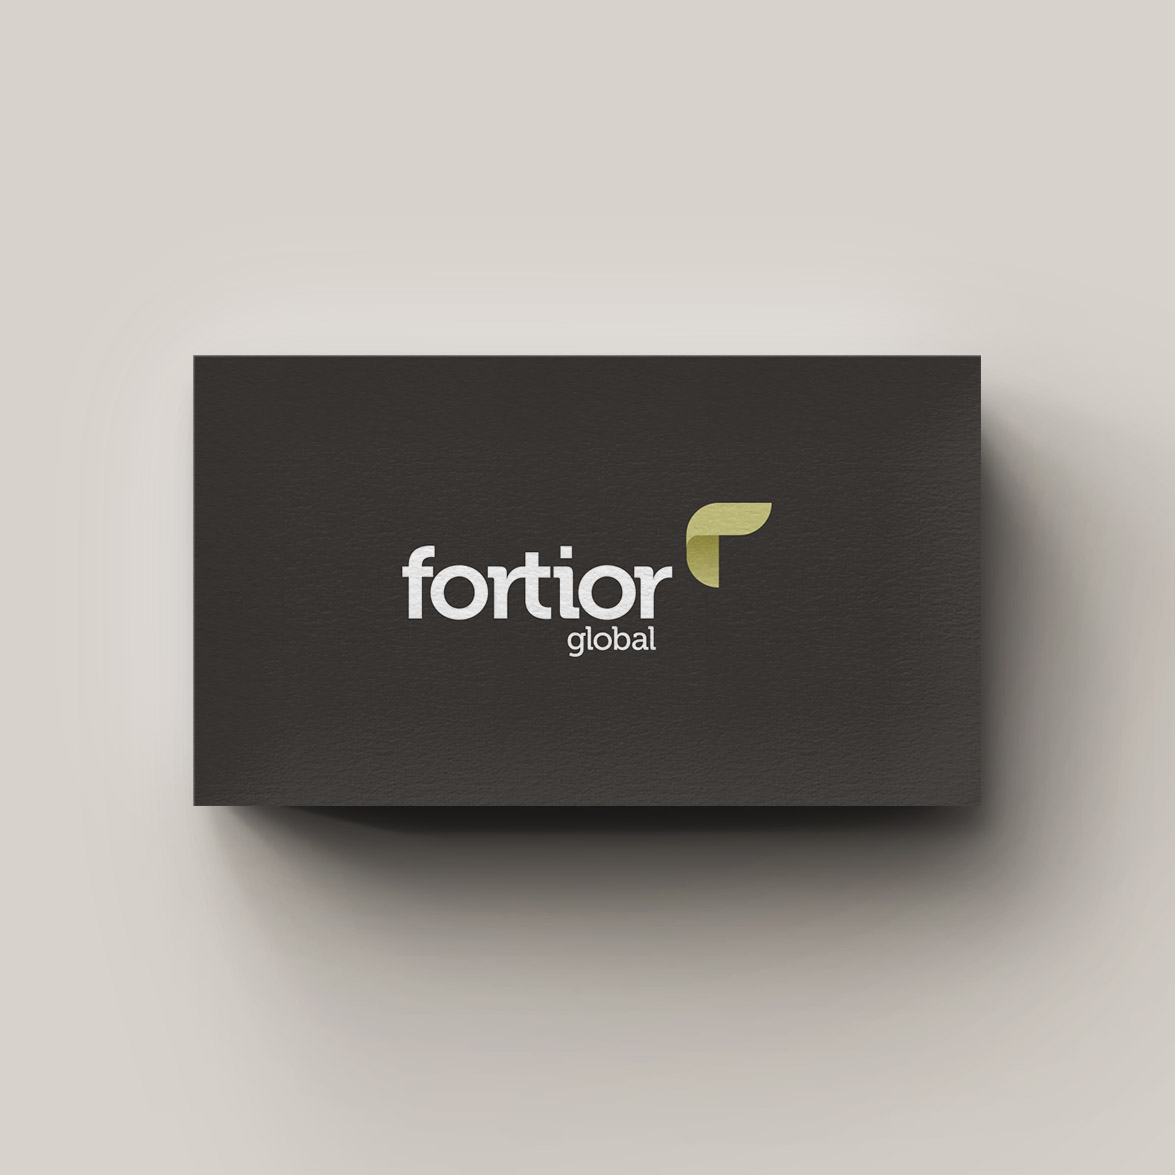 Fortior Global